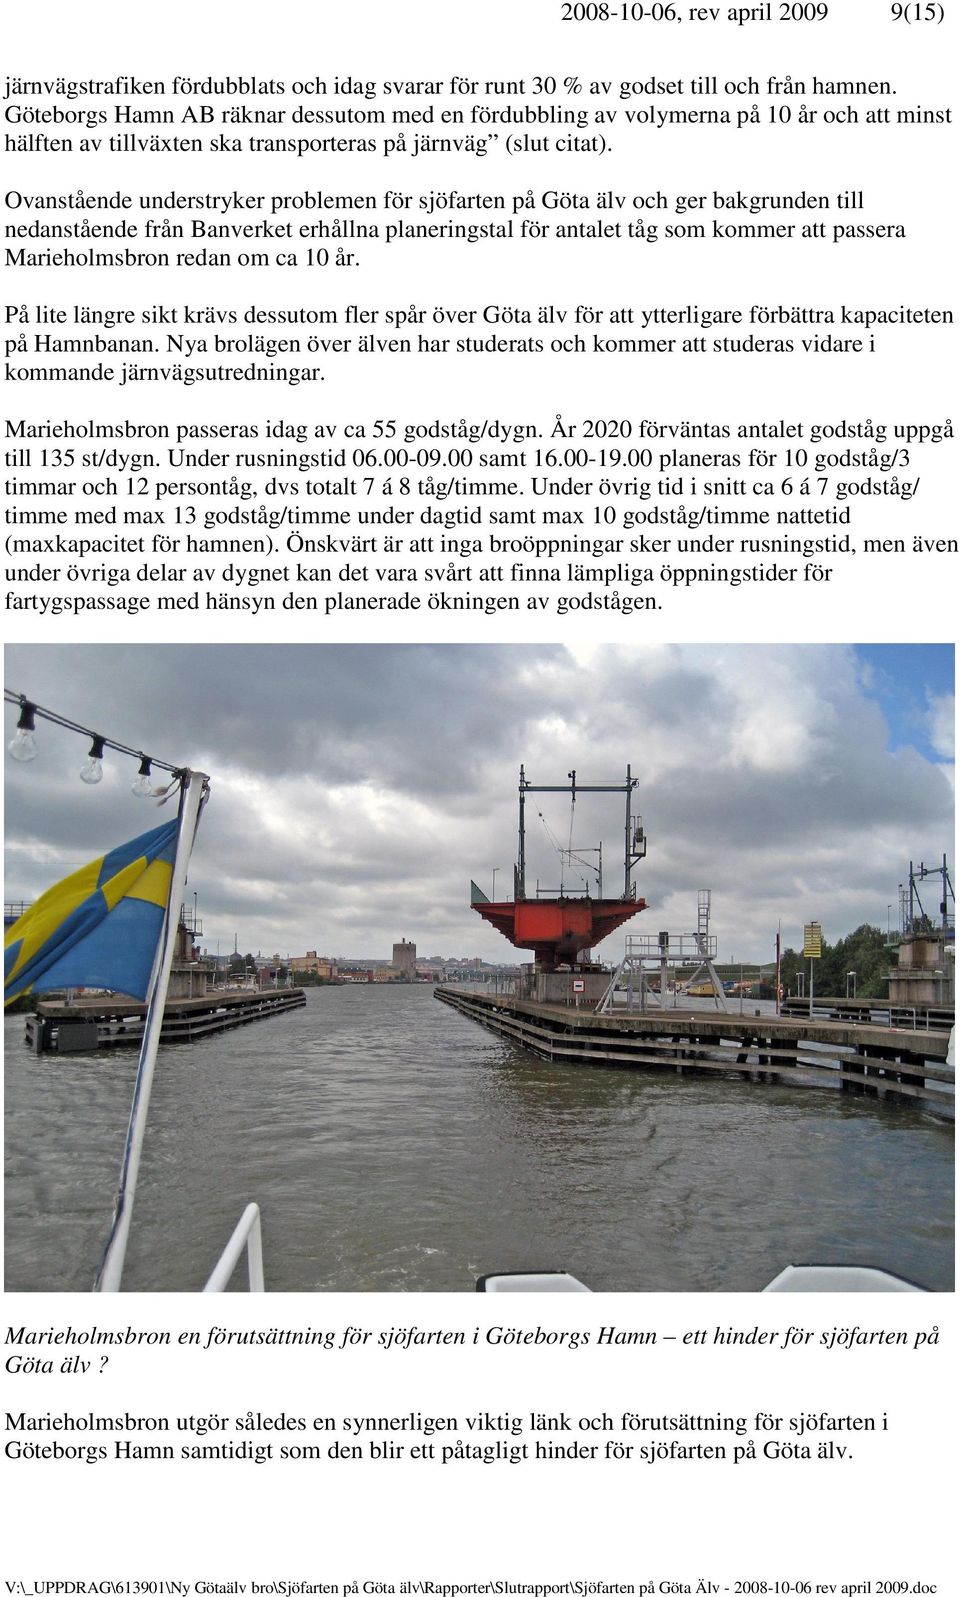 Ovanstående understryker problemen för sjöfarten på Göta älv och ger bakgrunden till nedanstående från Banverket erhållna planeringstal för antalet tåg som kommer att passera Marieholmsbron redan om